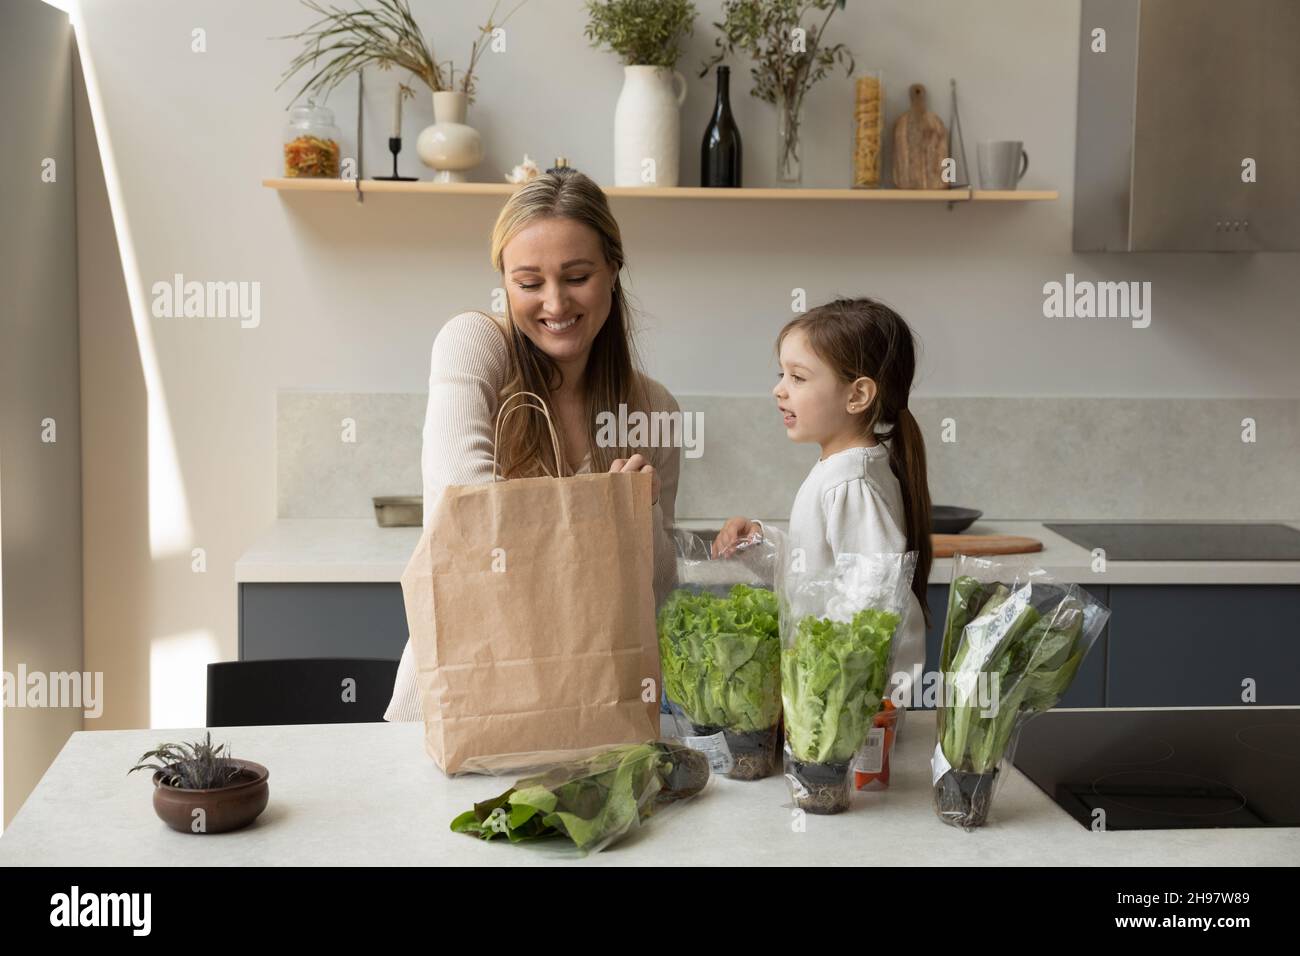 Feliz madre joven y niño desempacando productos. Foto de stock